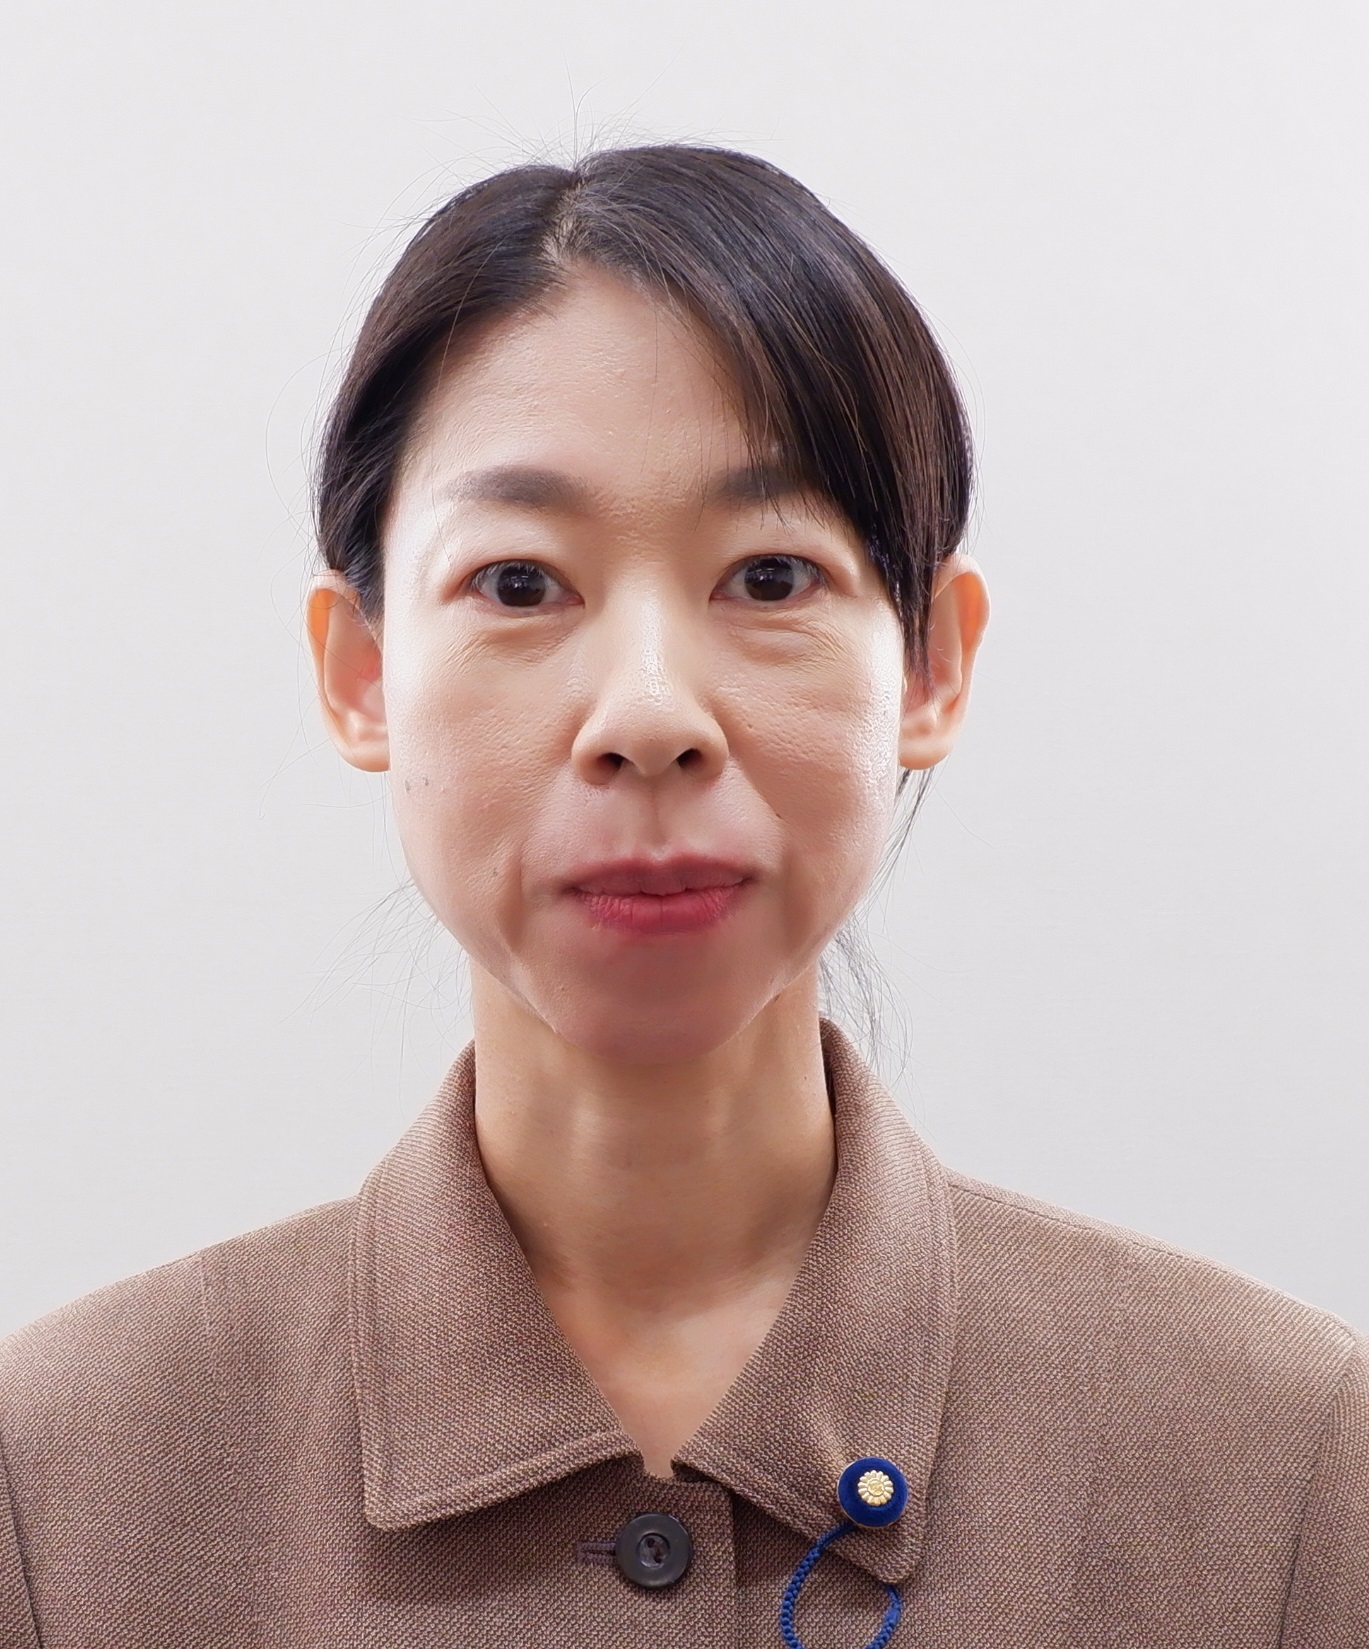 宇佐美 まり議員の顔写真